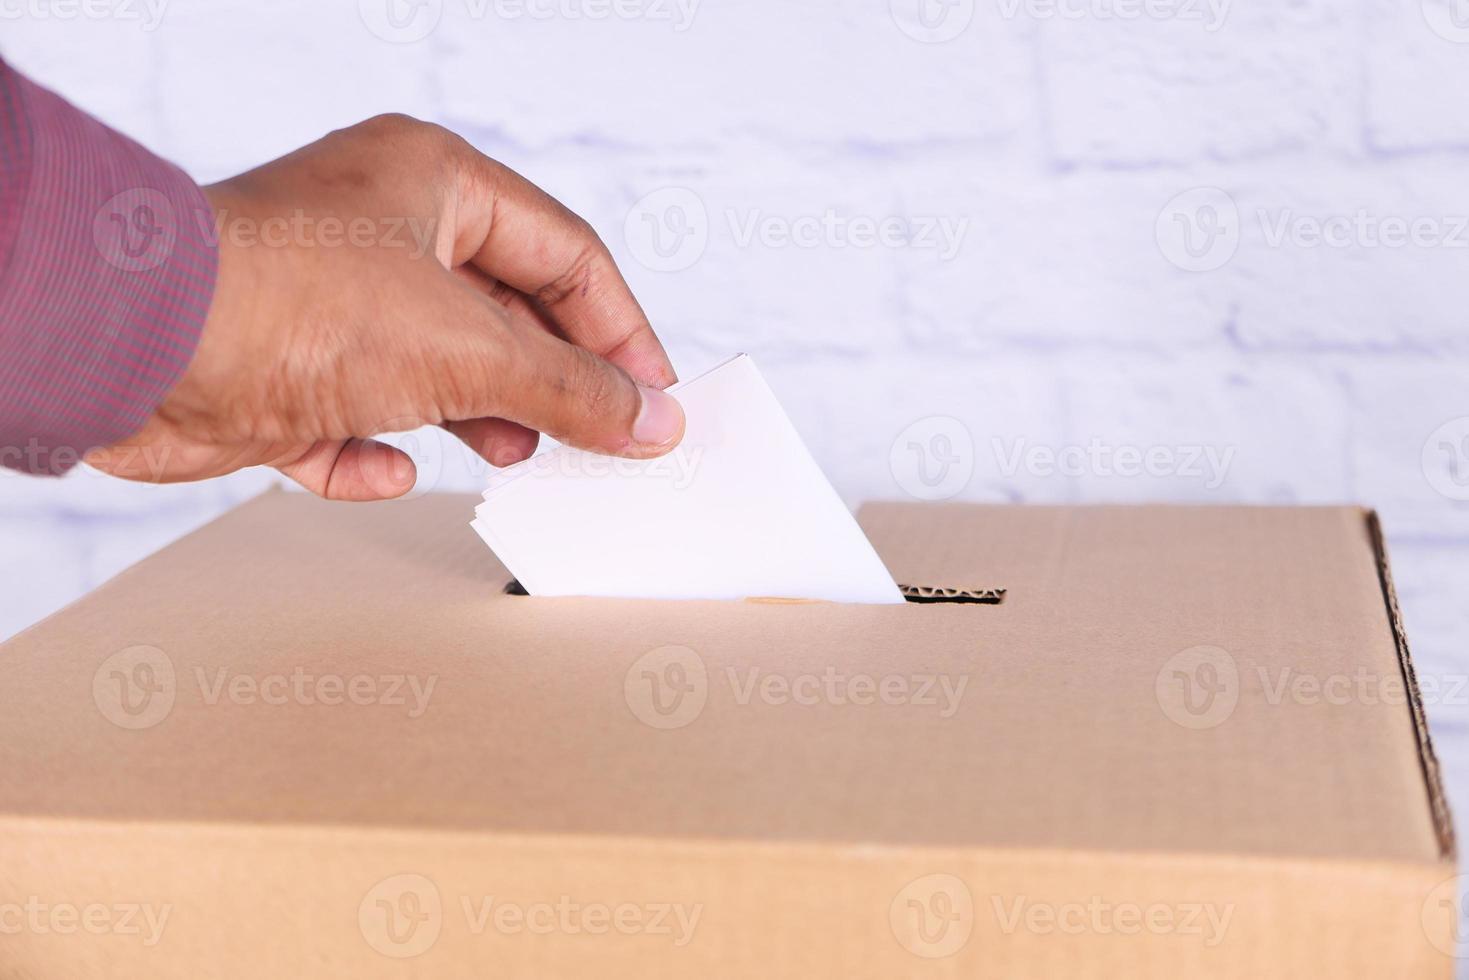 stretta di mano d'uomo mettendo la carta in una scatola con slot foto